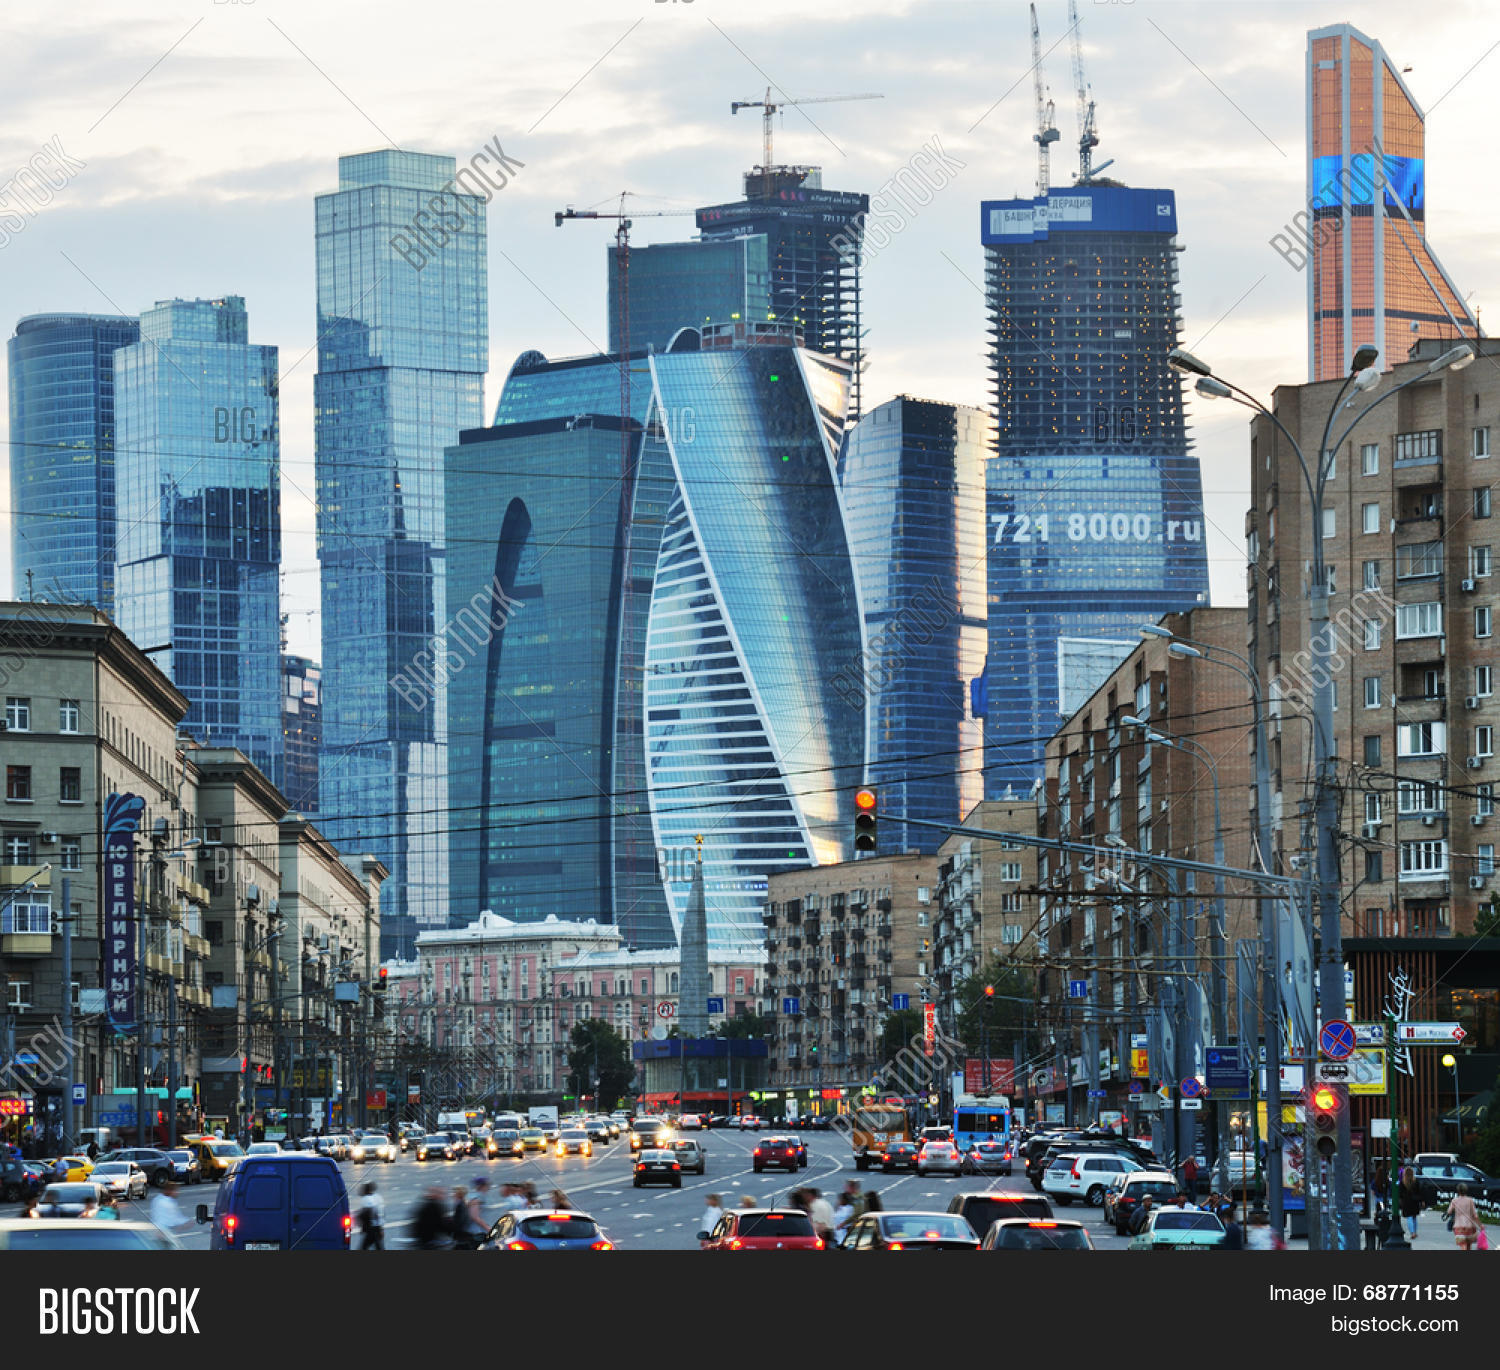 Справка о загрязнении воздуха и метеорологических условиях в г. Москве по состоянию на 08:00 16.04.2018 года - фото 1